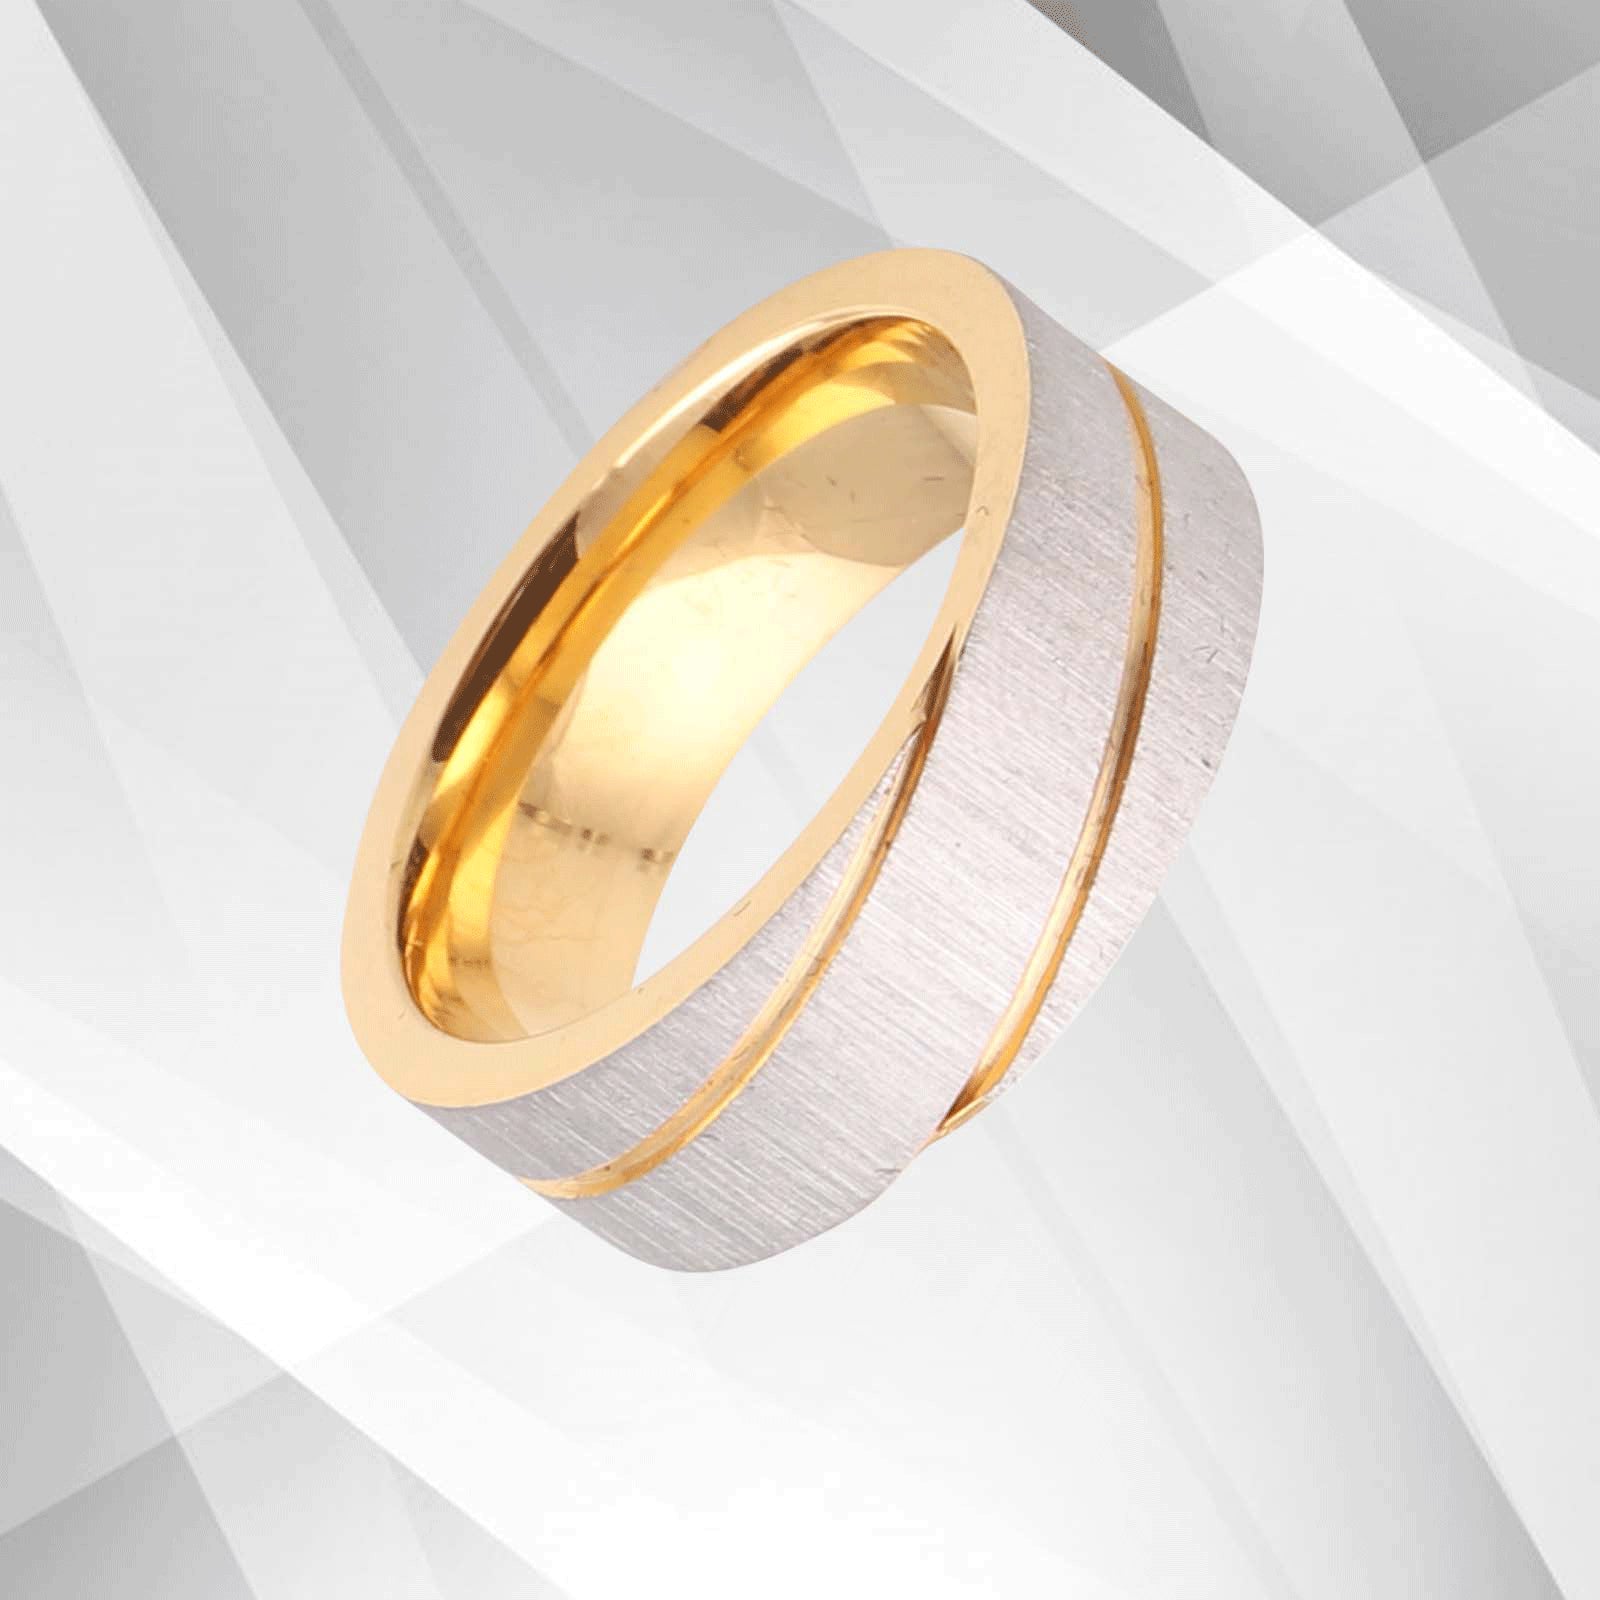 Posh Designer Titanium Wedding Band with Yellow and White Gold Finish - Handmade Men's Ring - Jewelry & Watches - Bijou Her -  -  - 